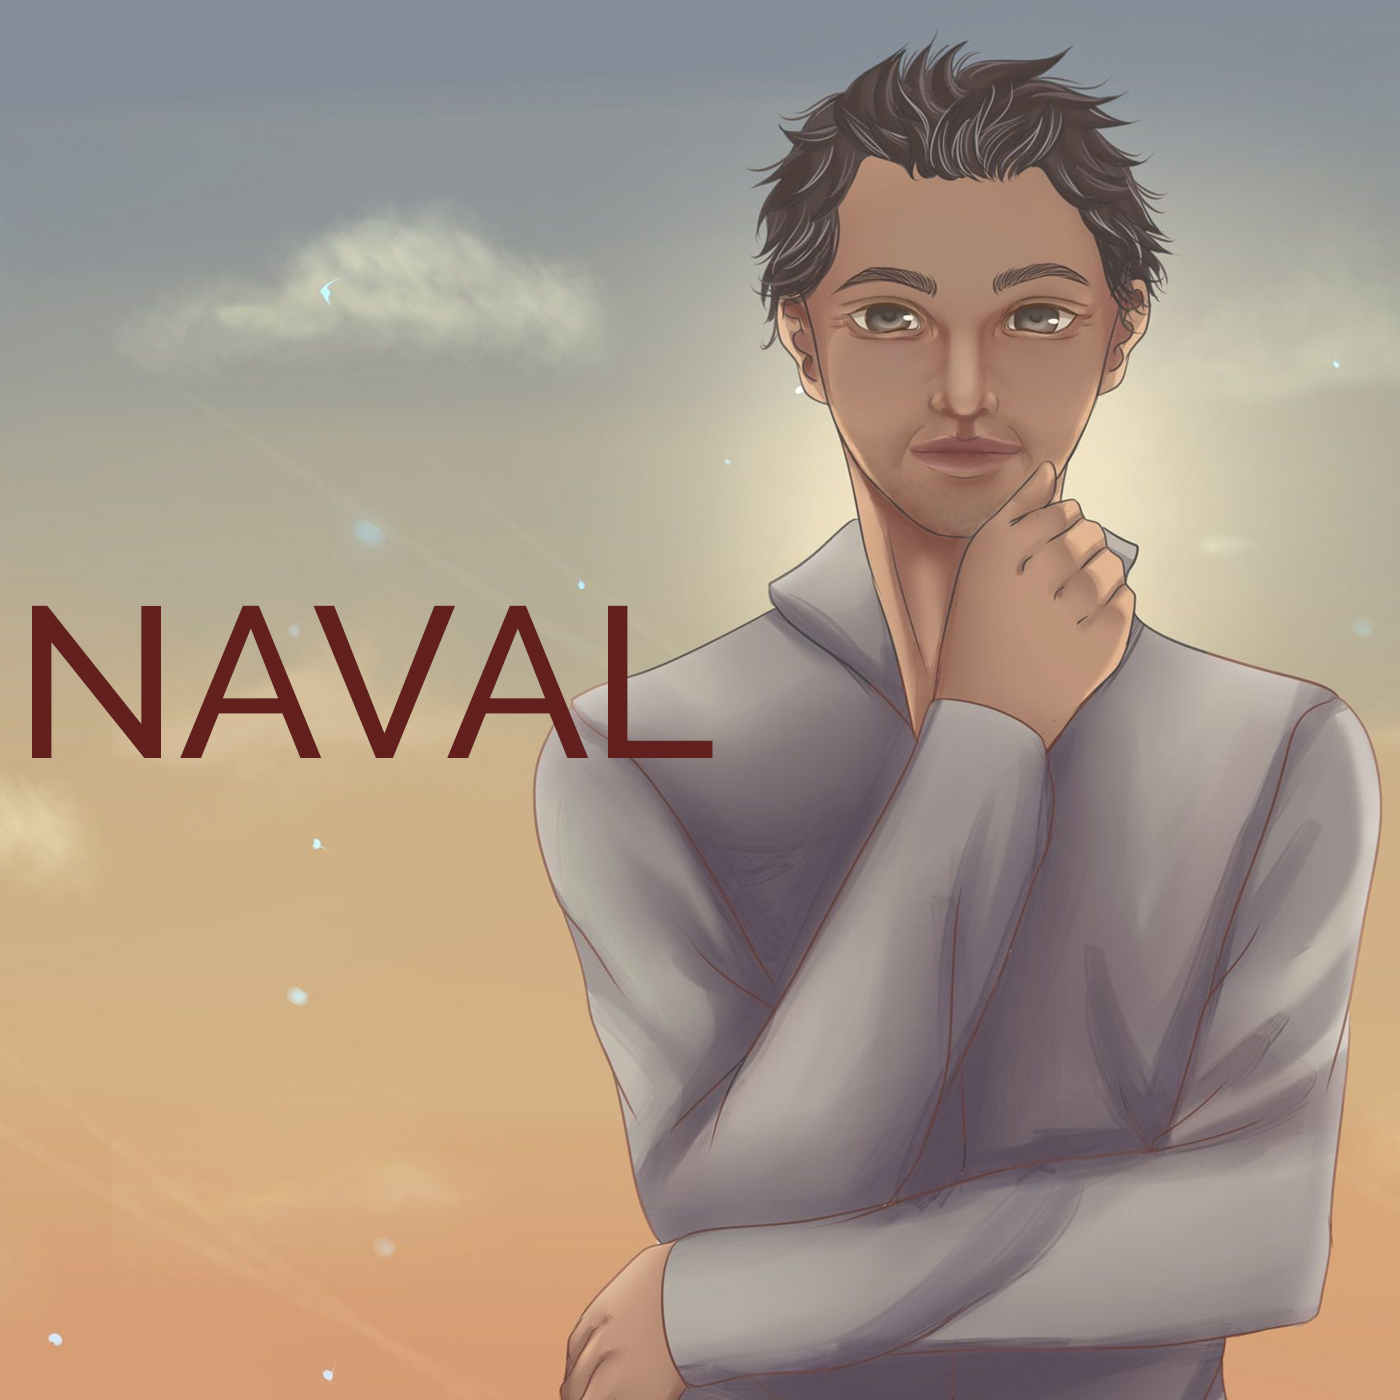 Naval Introduces Haseeb Qureshi & Vitalik Buterin